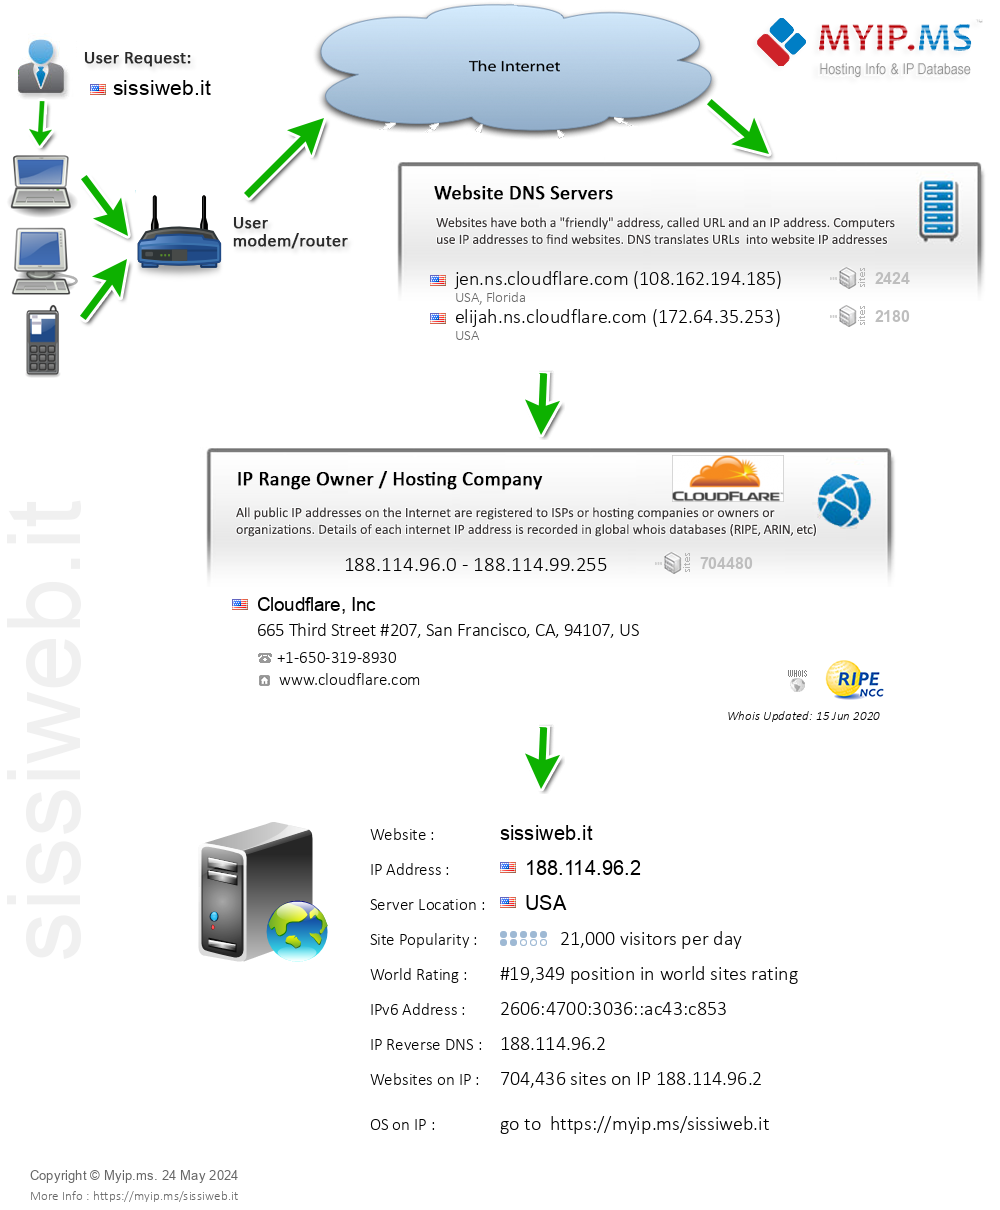 Sissiweb.it - Website Hosting Visual IP Diagram